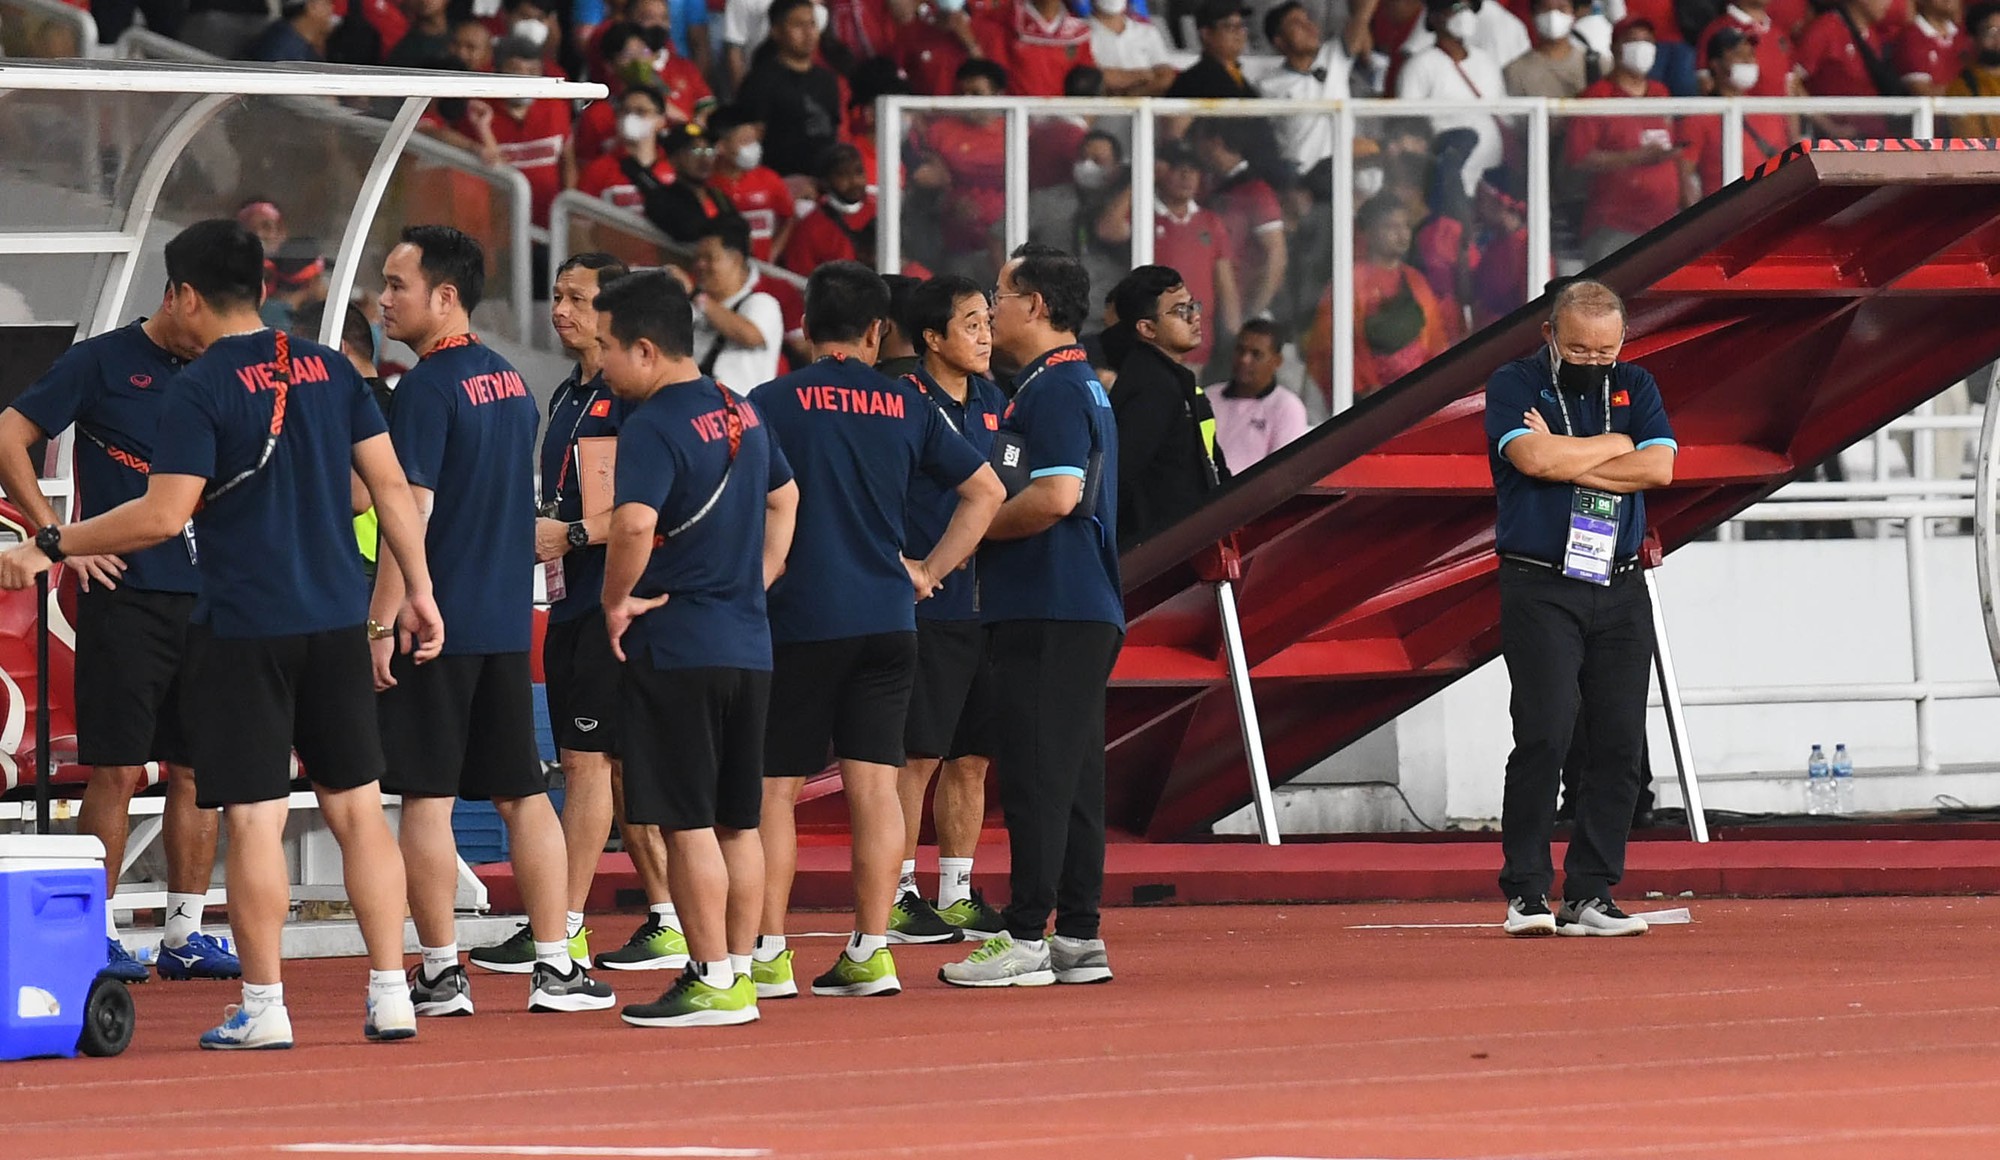 HLV Park Hang Seo ngăn Văn Hậu tìm trọng tài sau trận đấu với Indonesia - Ảnh 5.